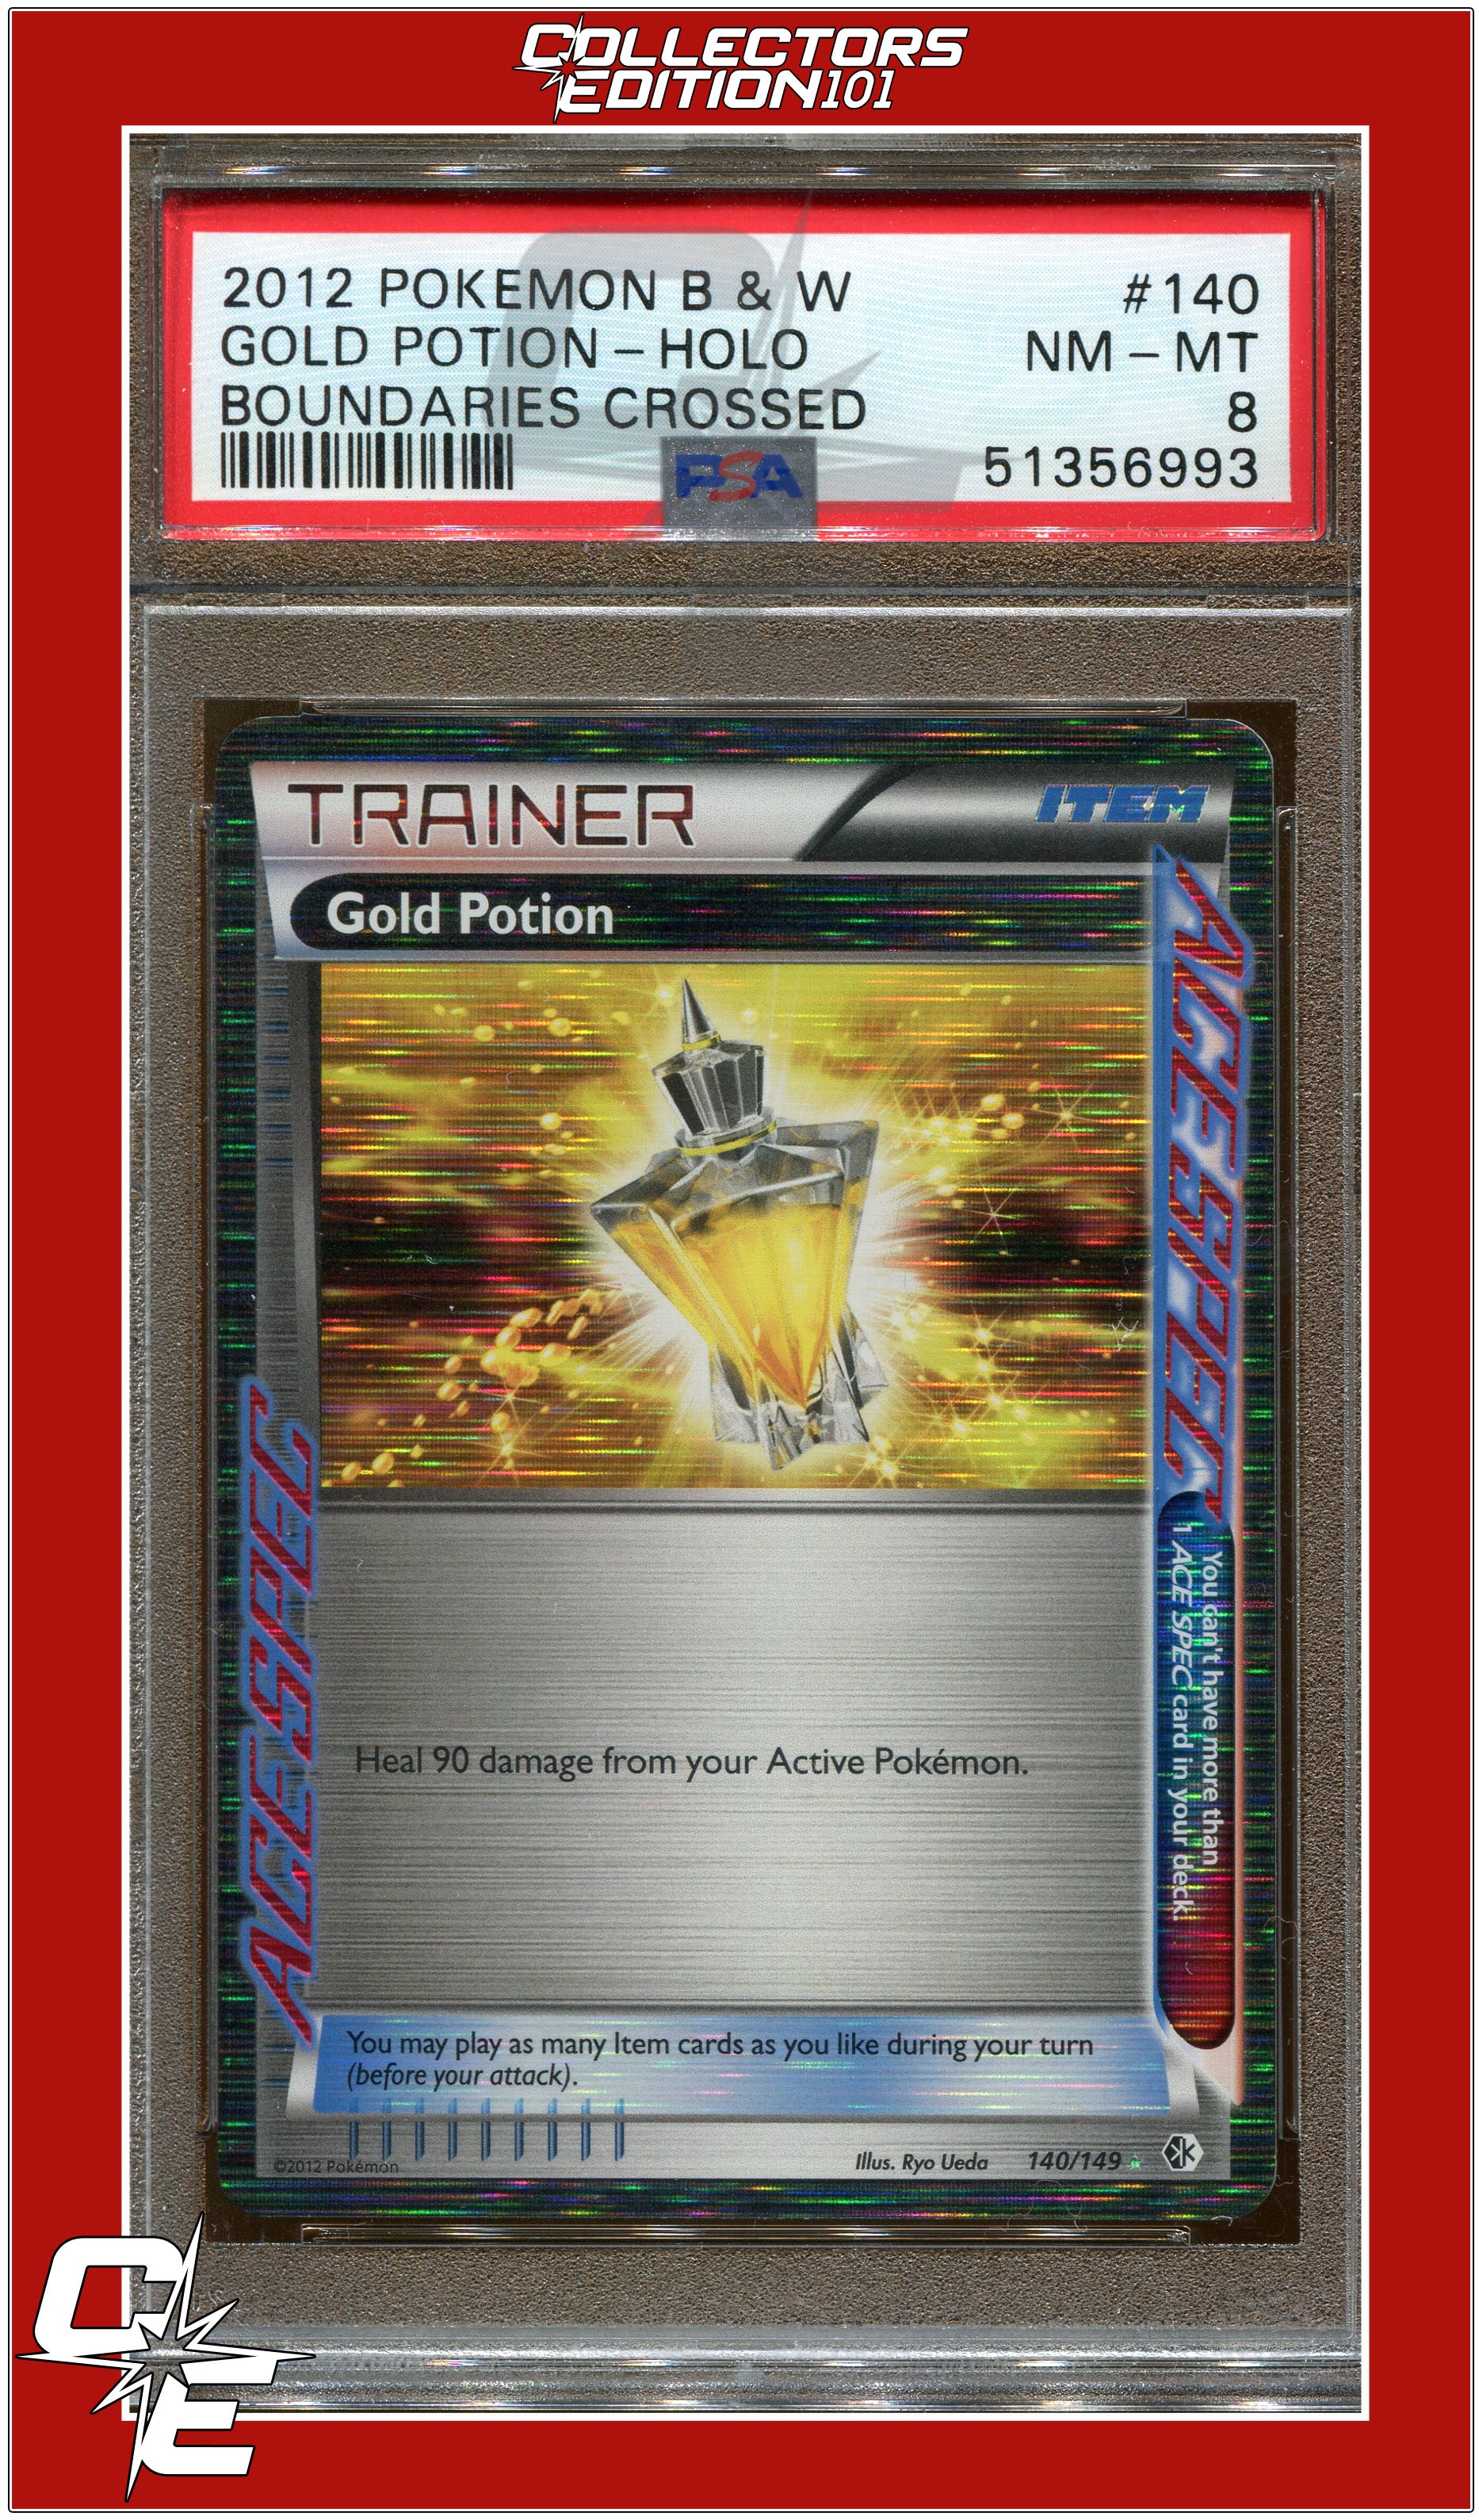 Potion XY Trainer Kit (Sylveon), Pokémon